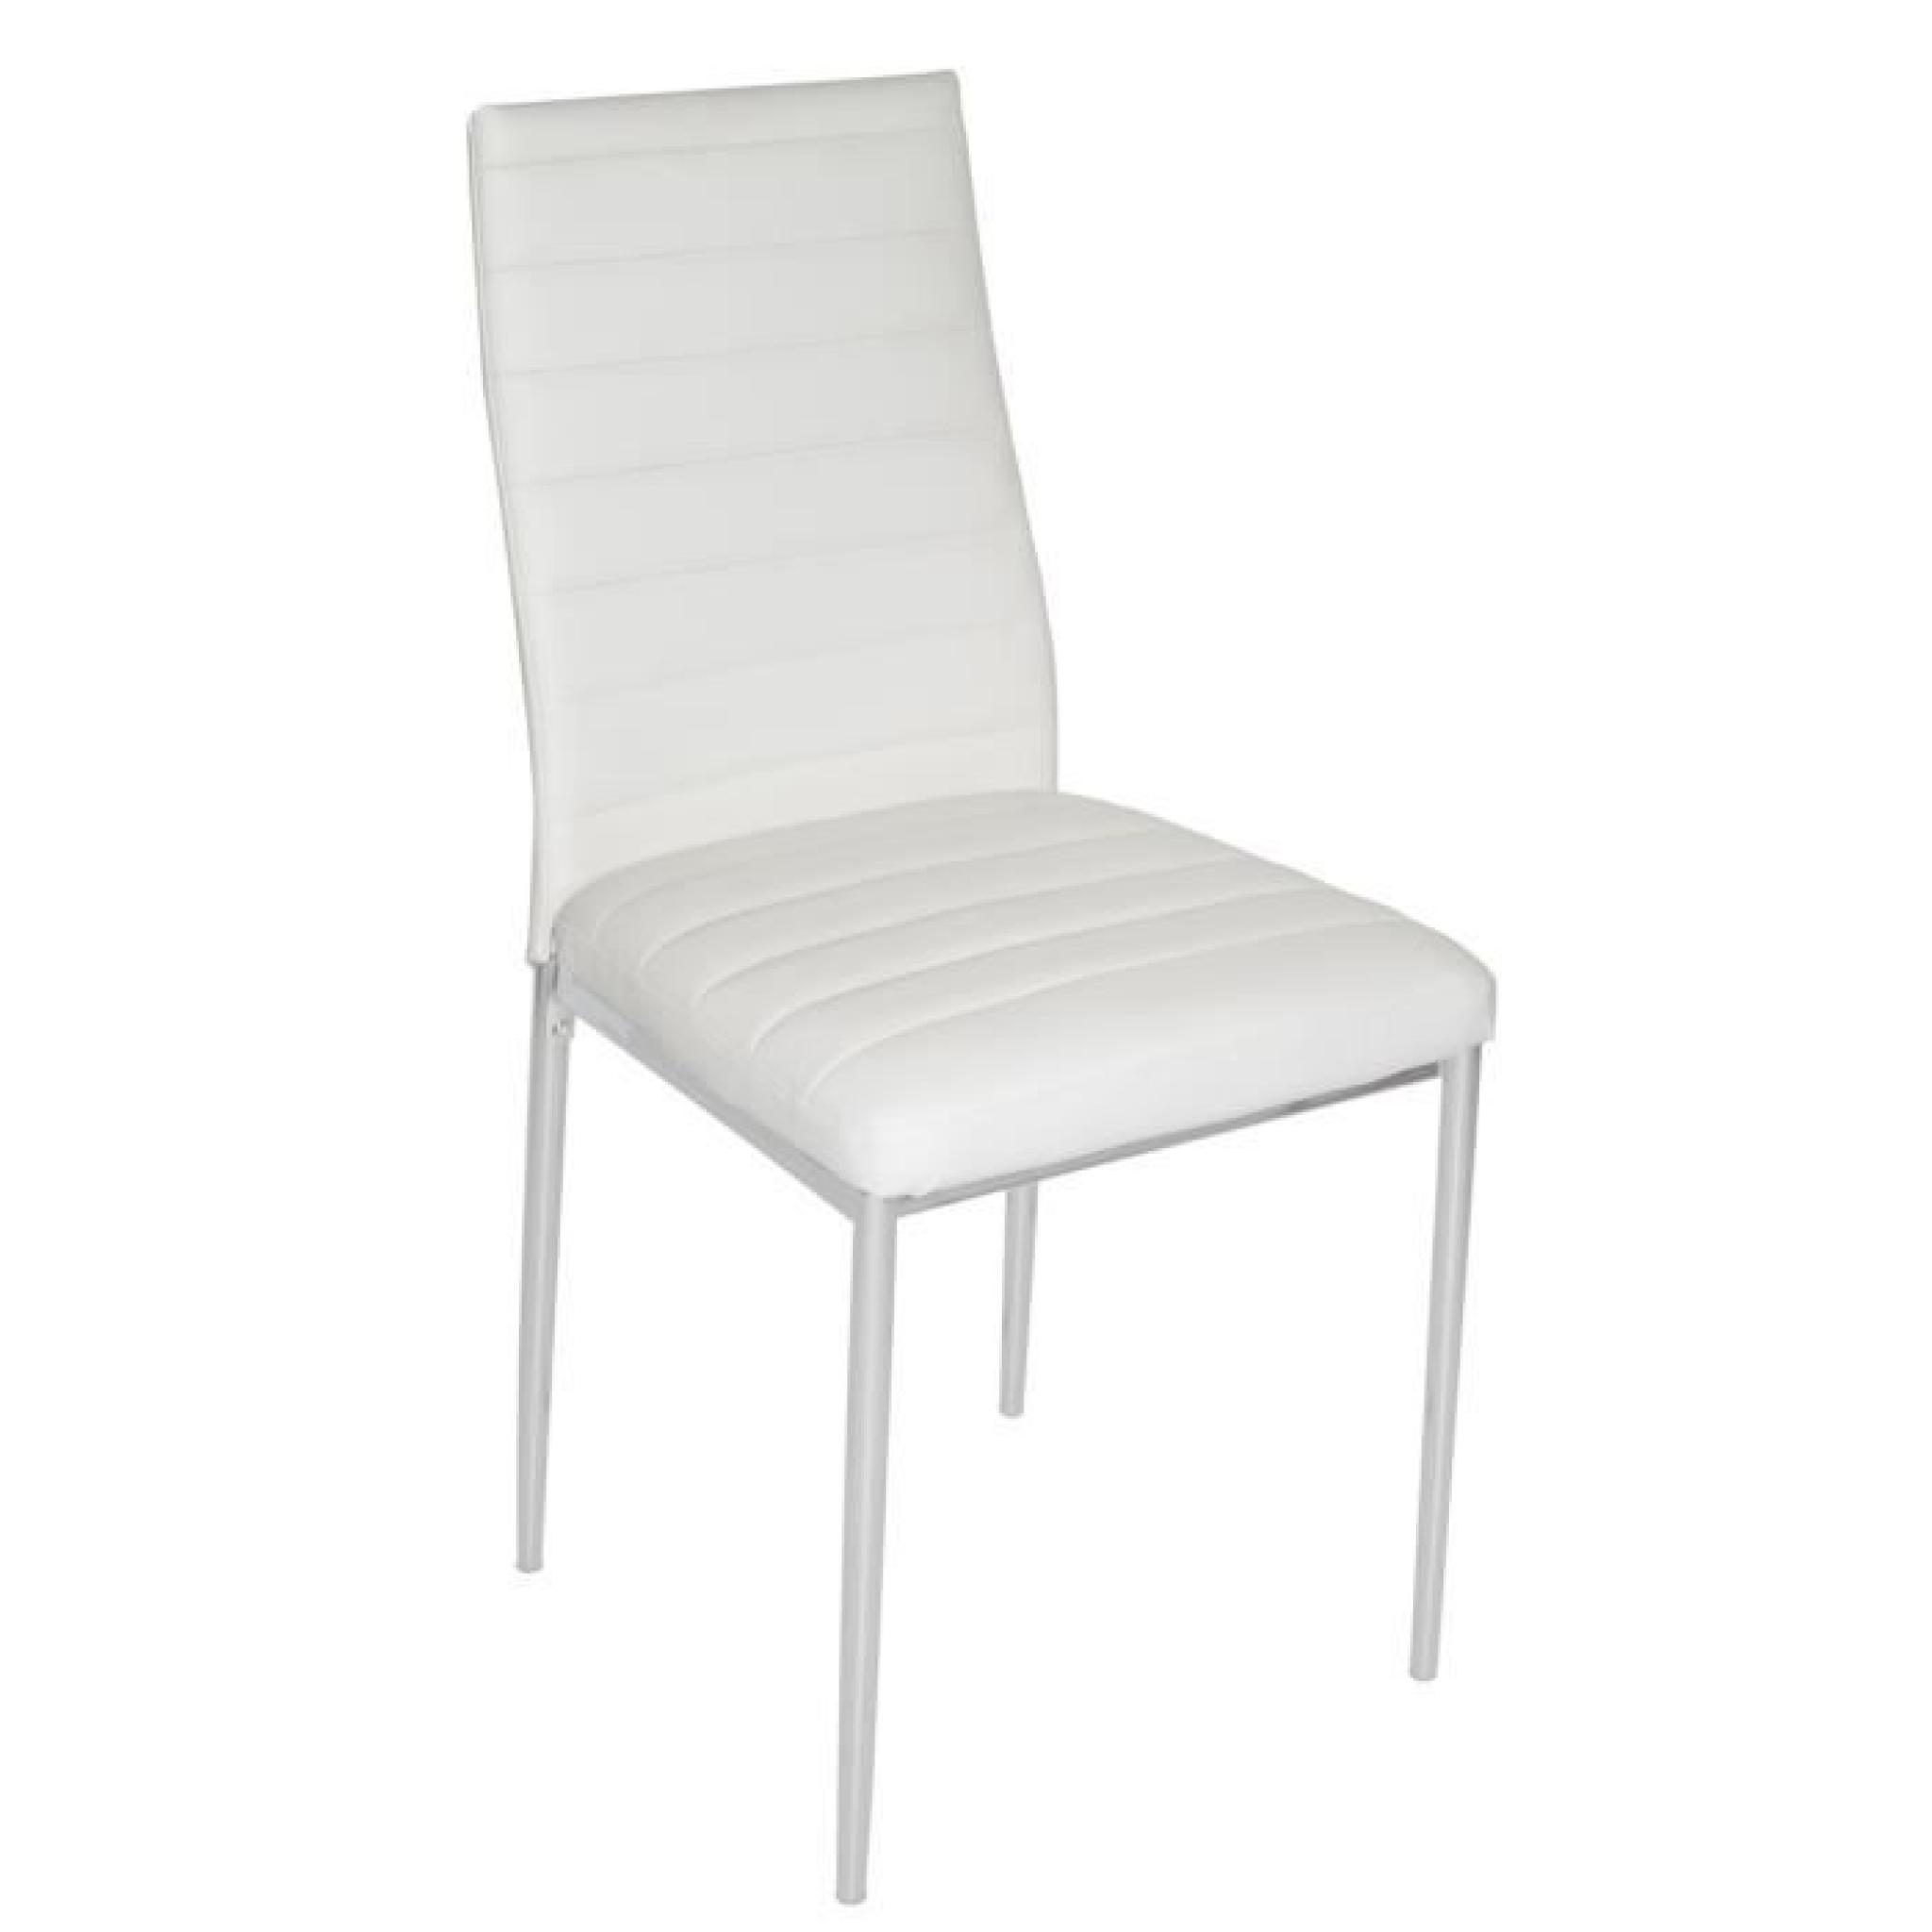 Chaise de salon blanche avec pieds en acier Argent, 430 x 425 x 930 mm